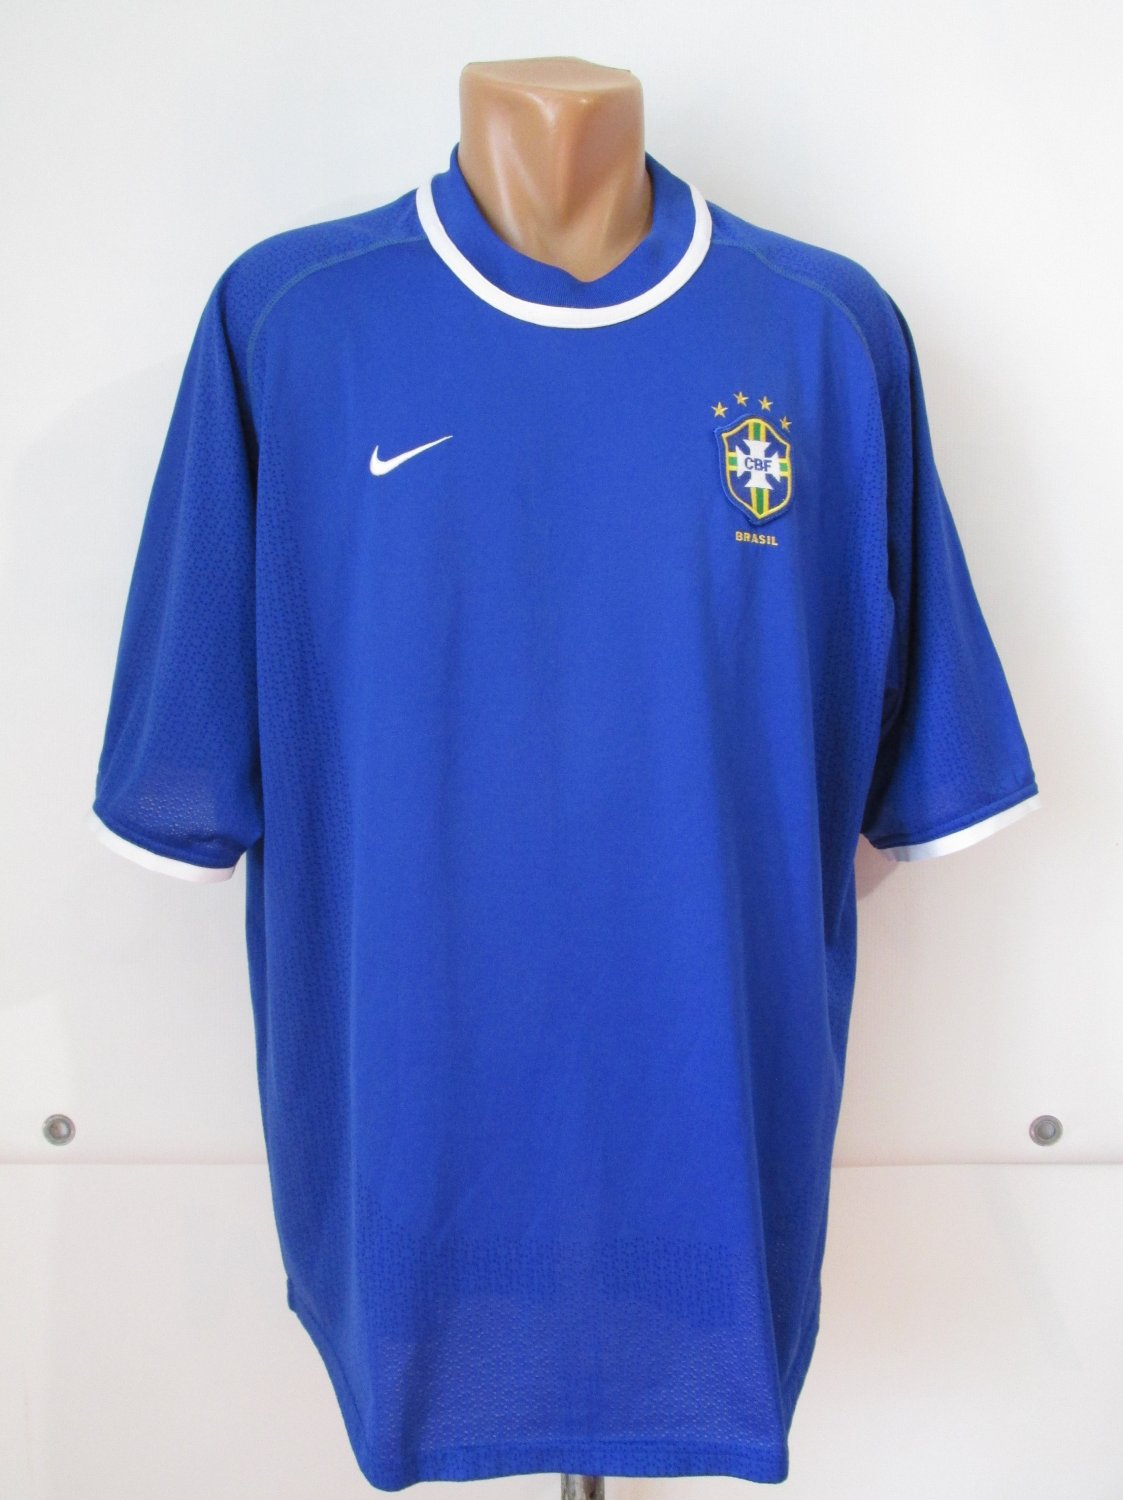 Brazil Away football shirt 2000 - 2002.